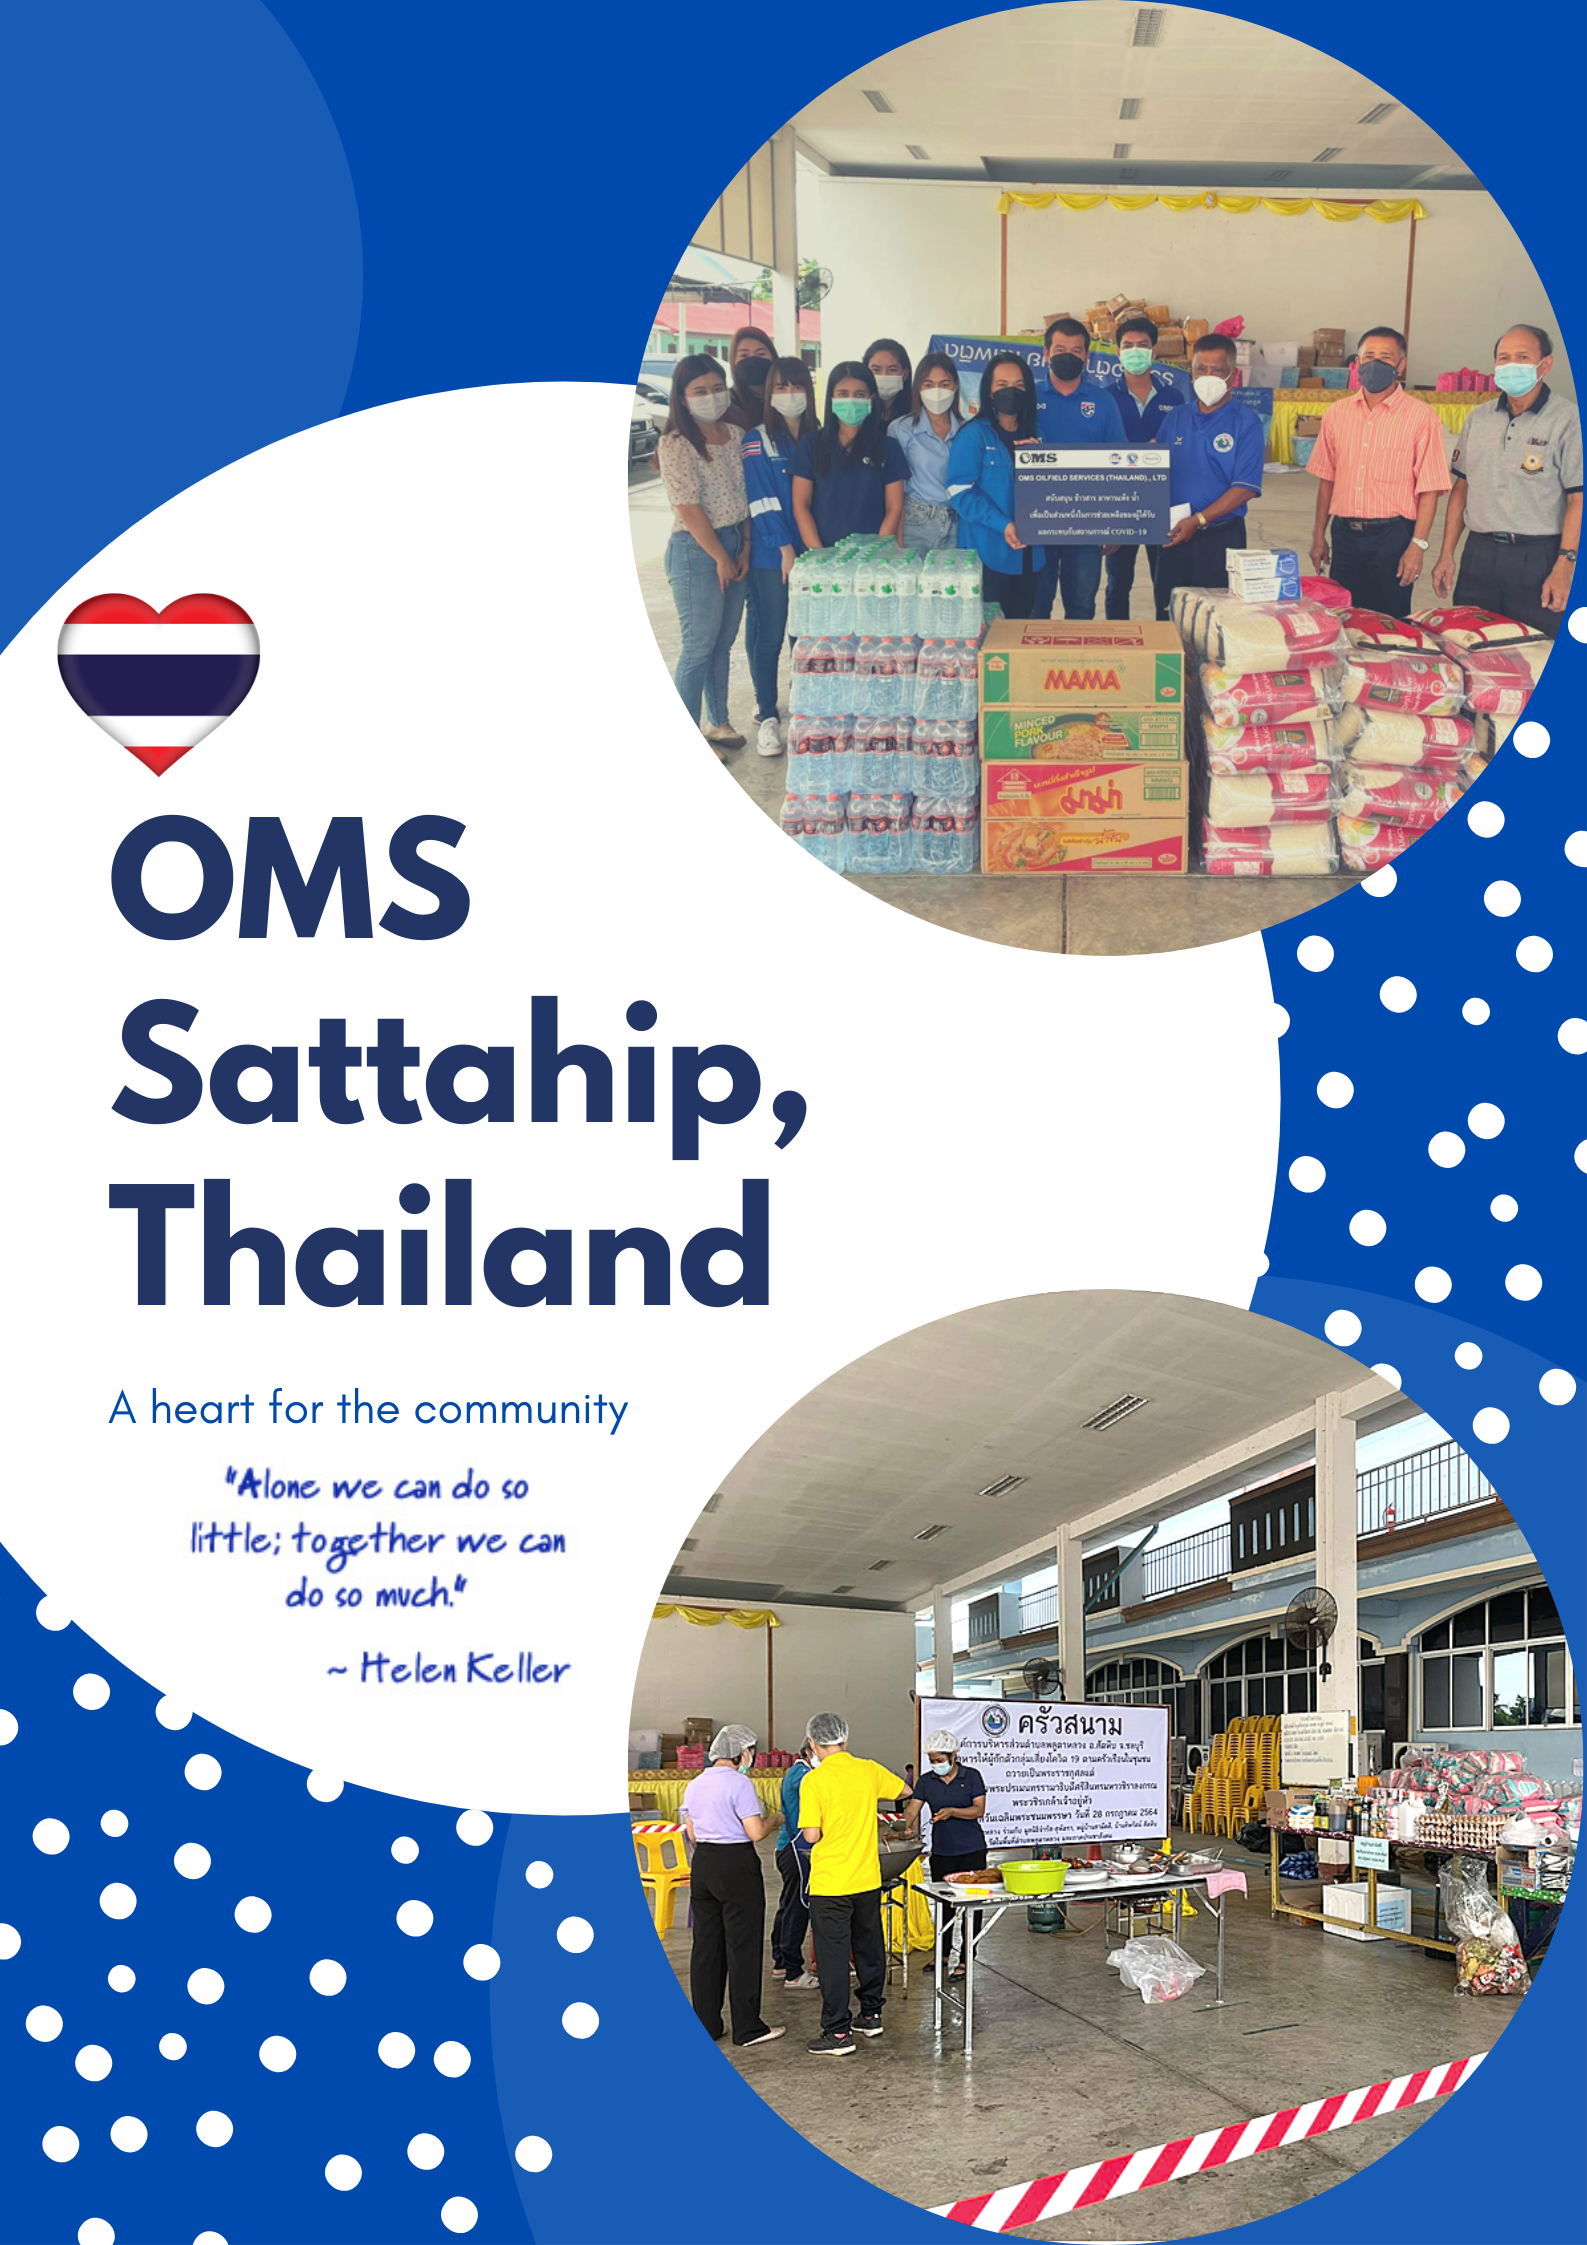 OMS Sattahip (Thailand) – CSR In Action